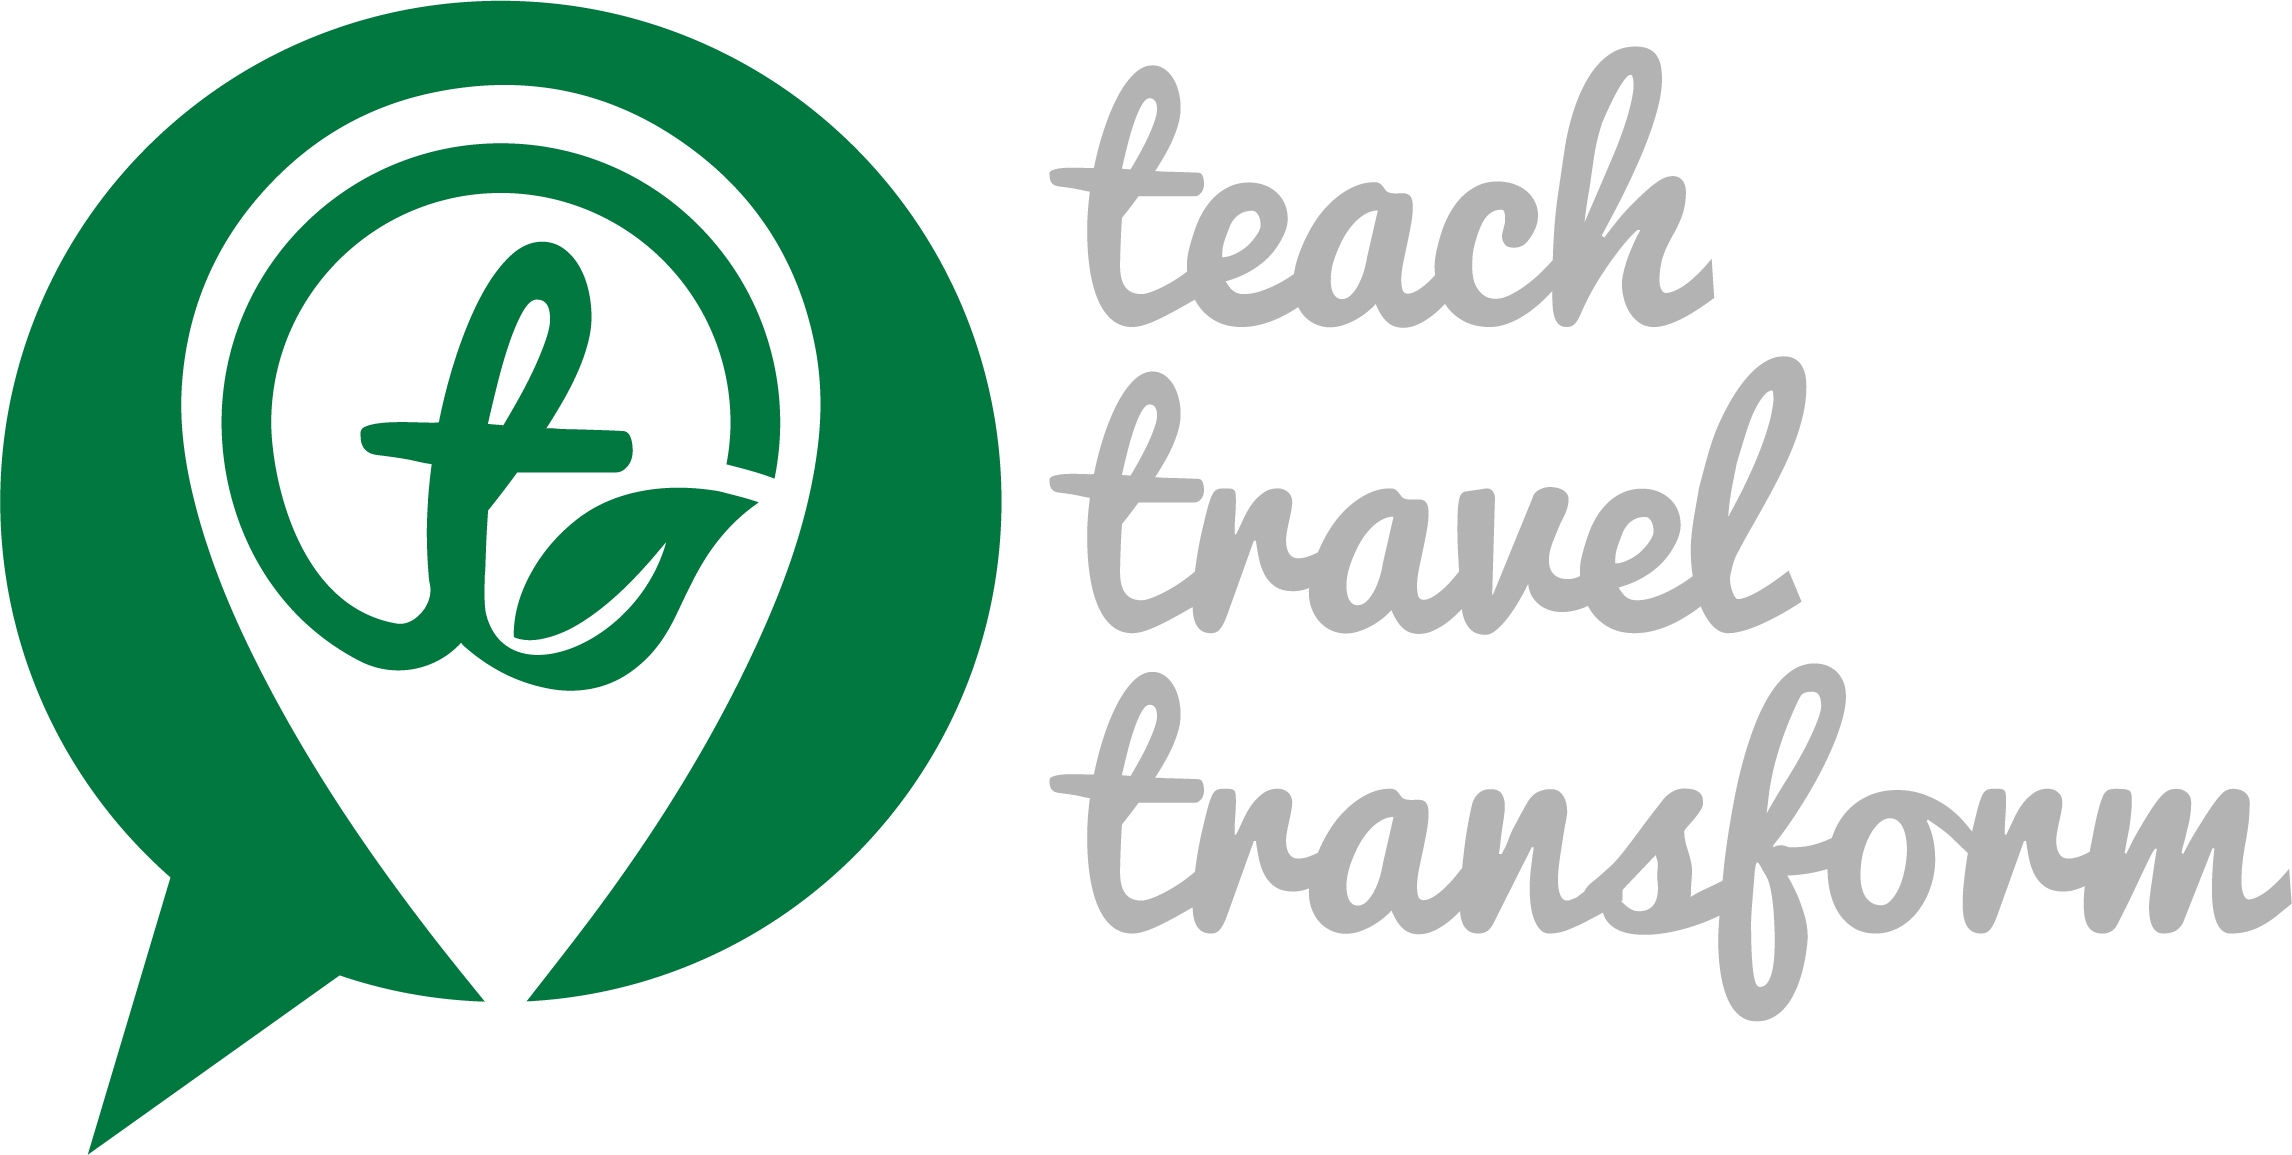 teach by travel inc